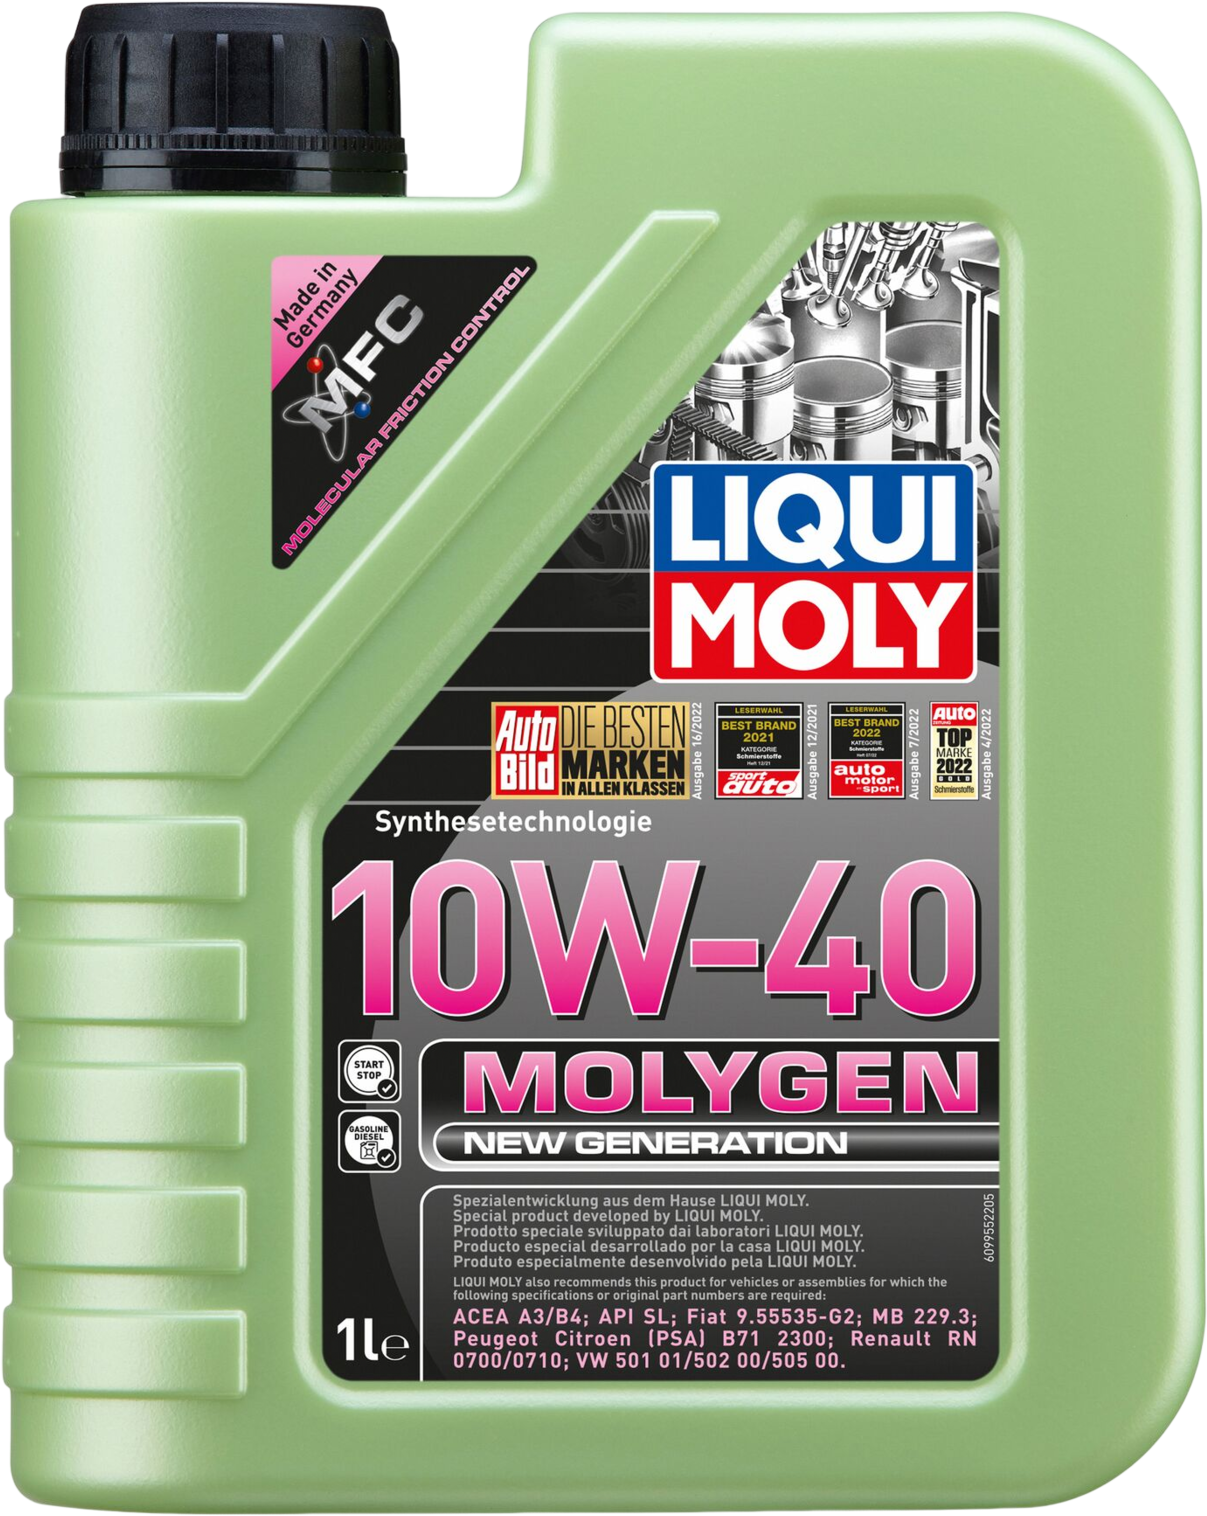 Liqui Moly Molygen New Generation 10W-40, 1 lt